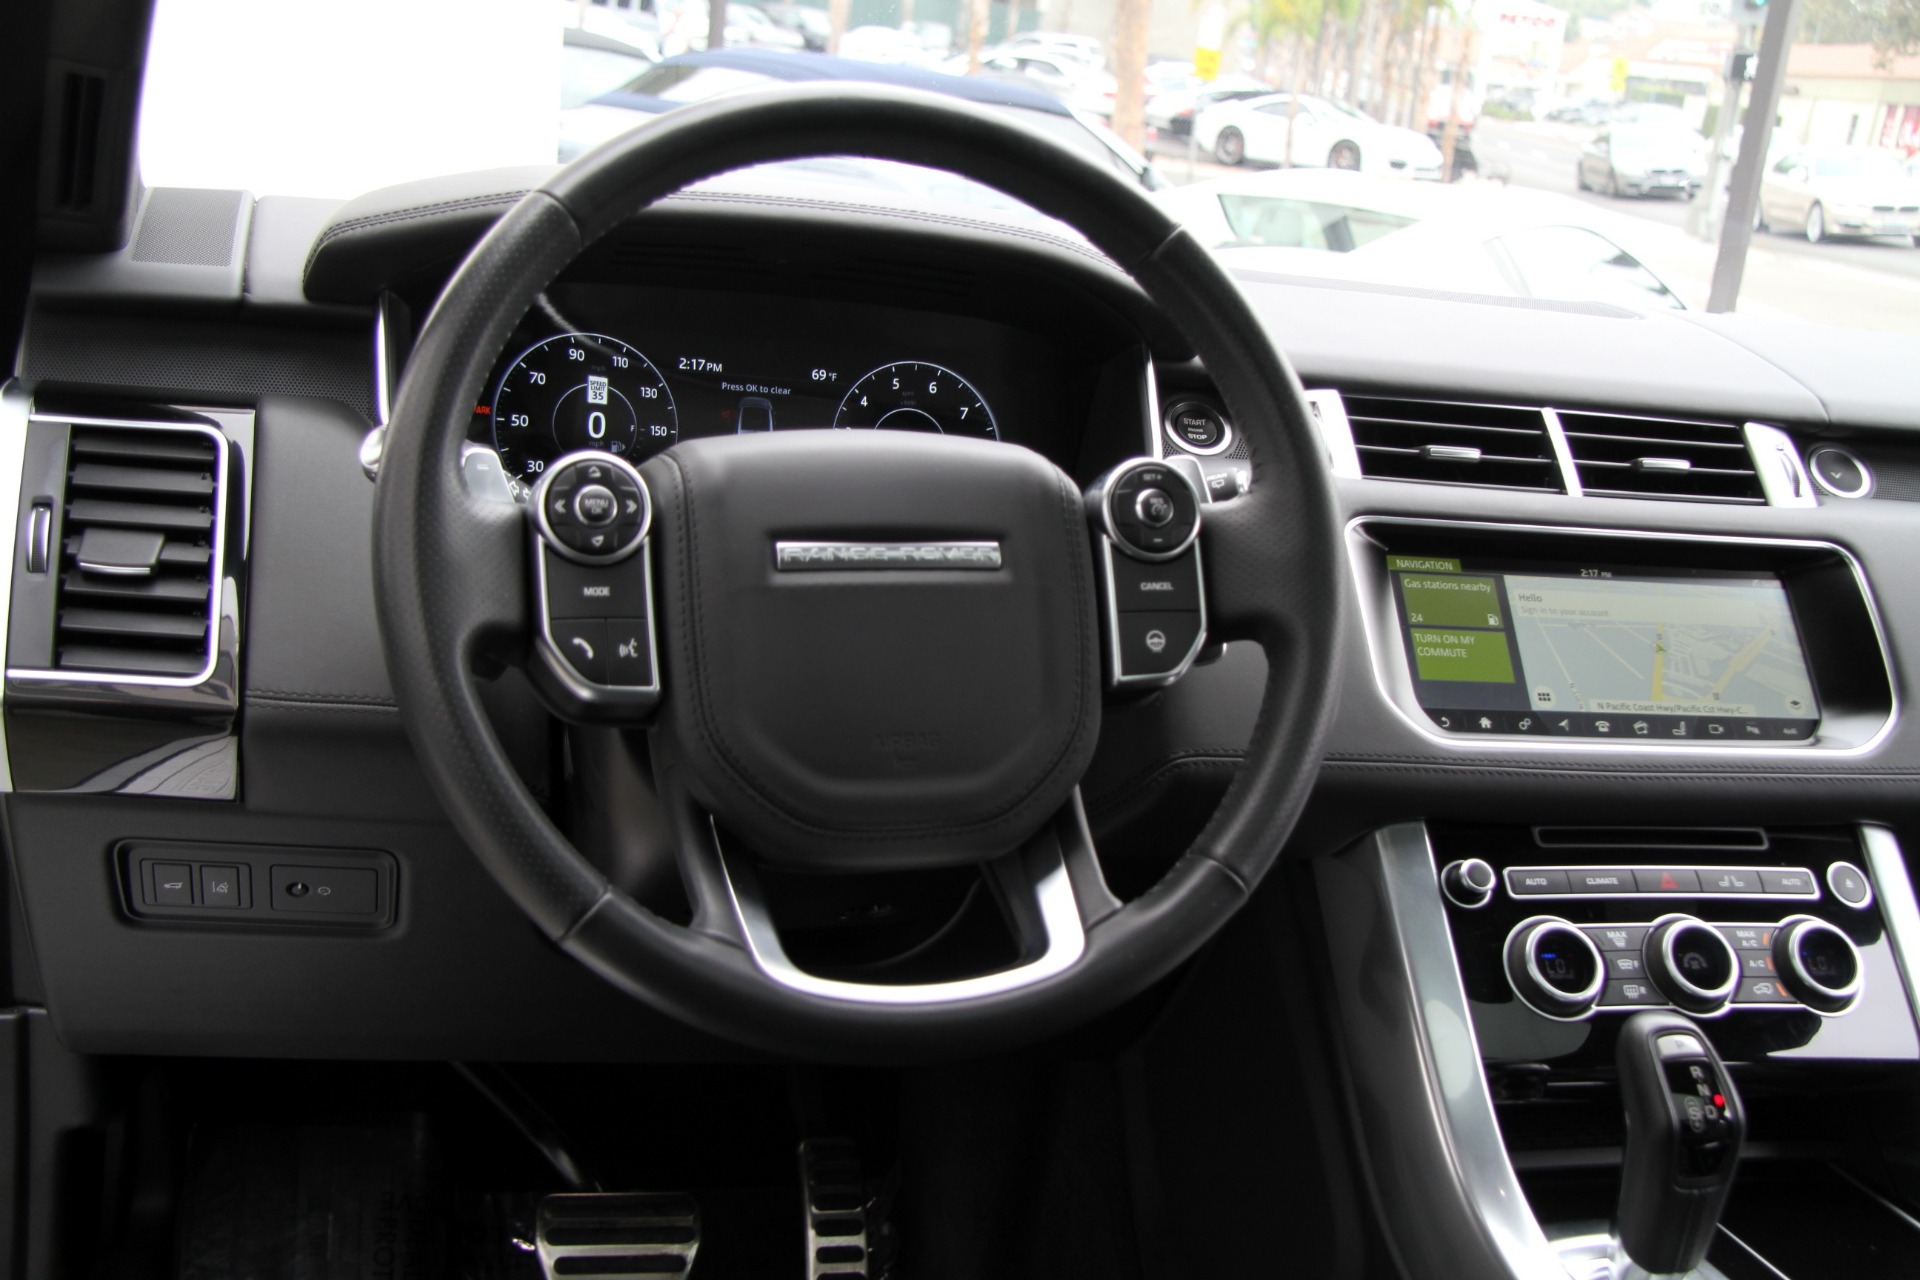 Inside the Land Rover Range Rover Evoque | Land Rover Darien